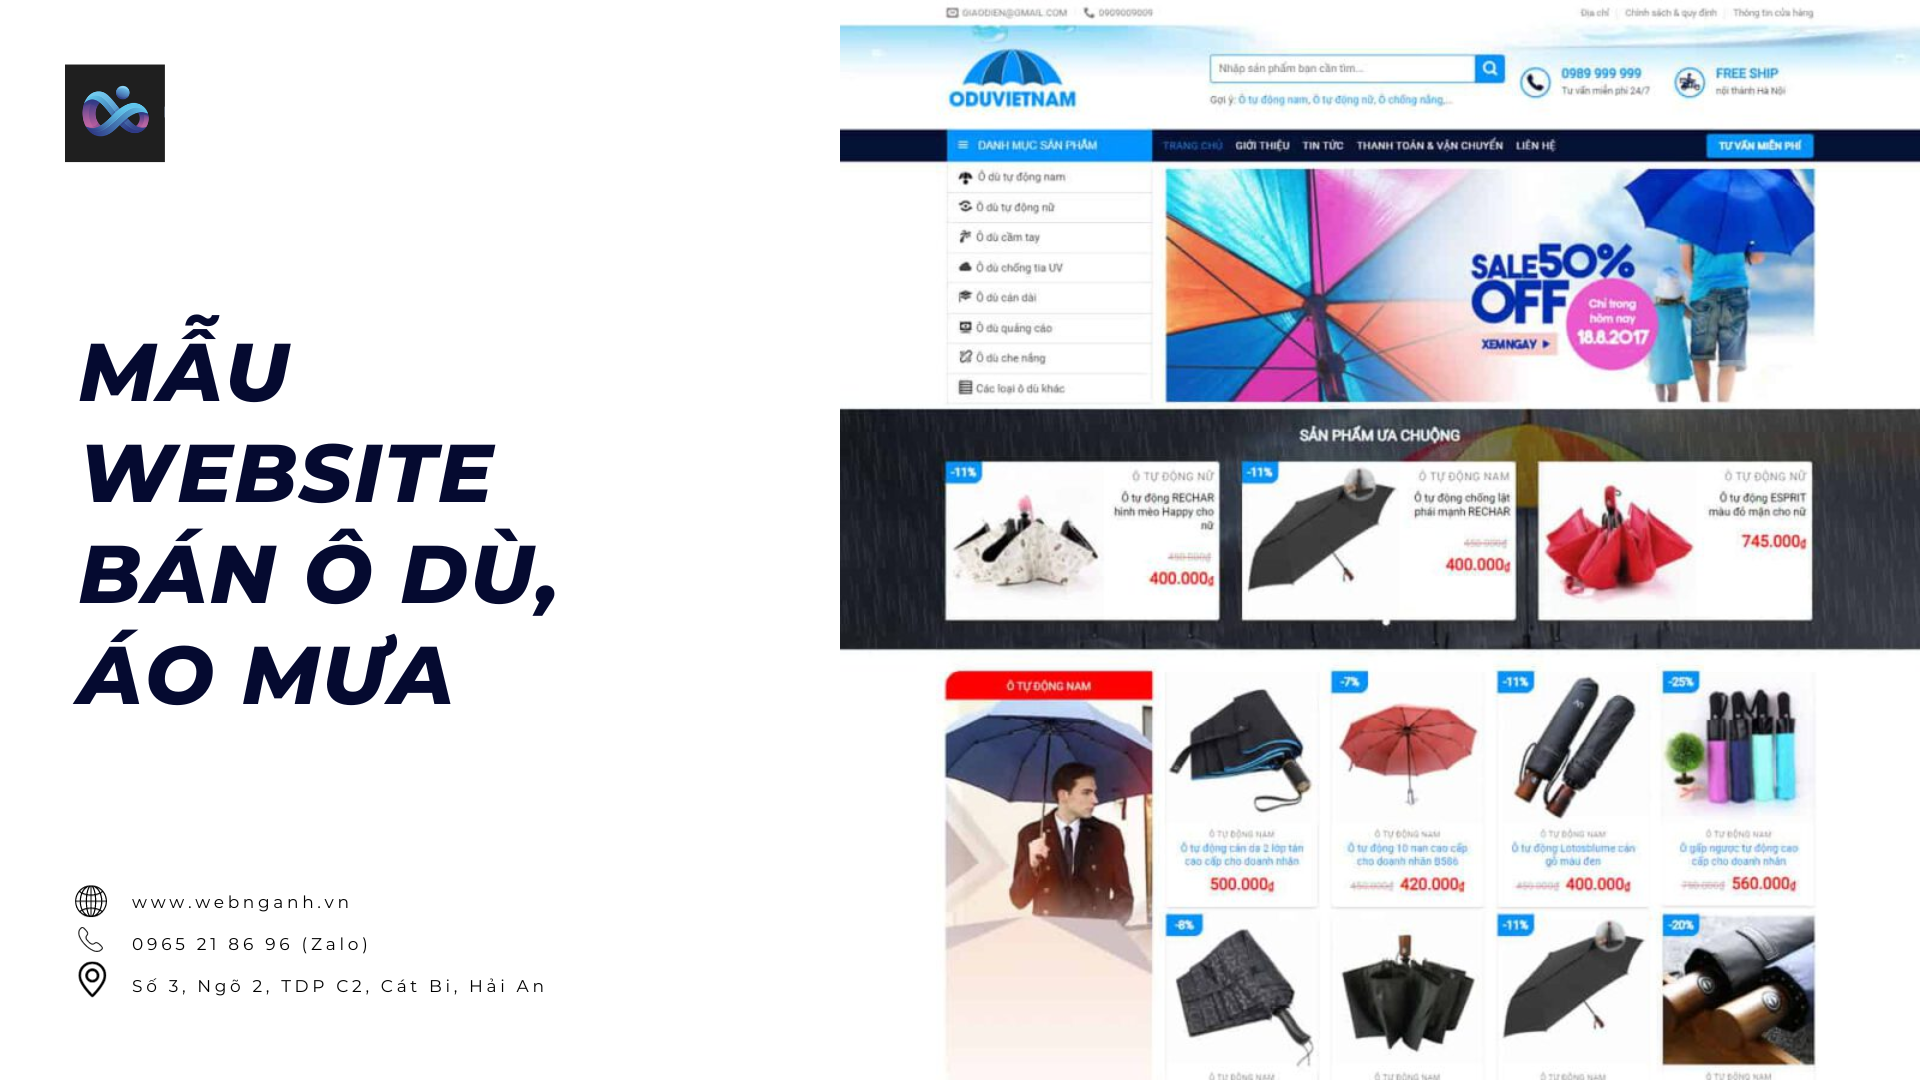 Mẫu Website bán ô dù, áo mưa